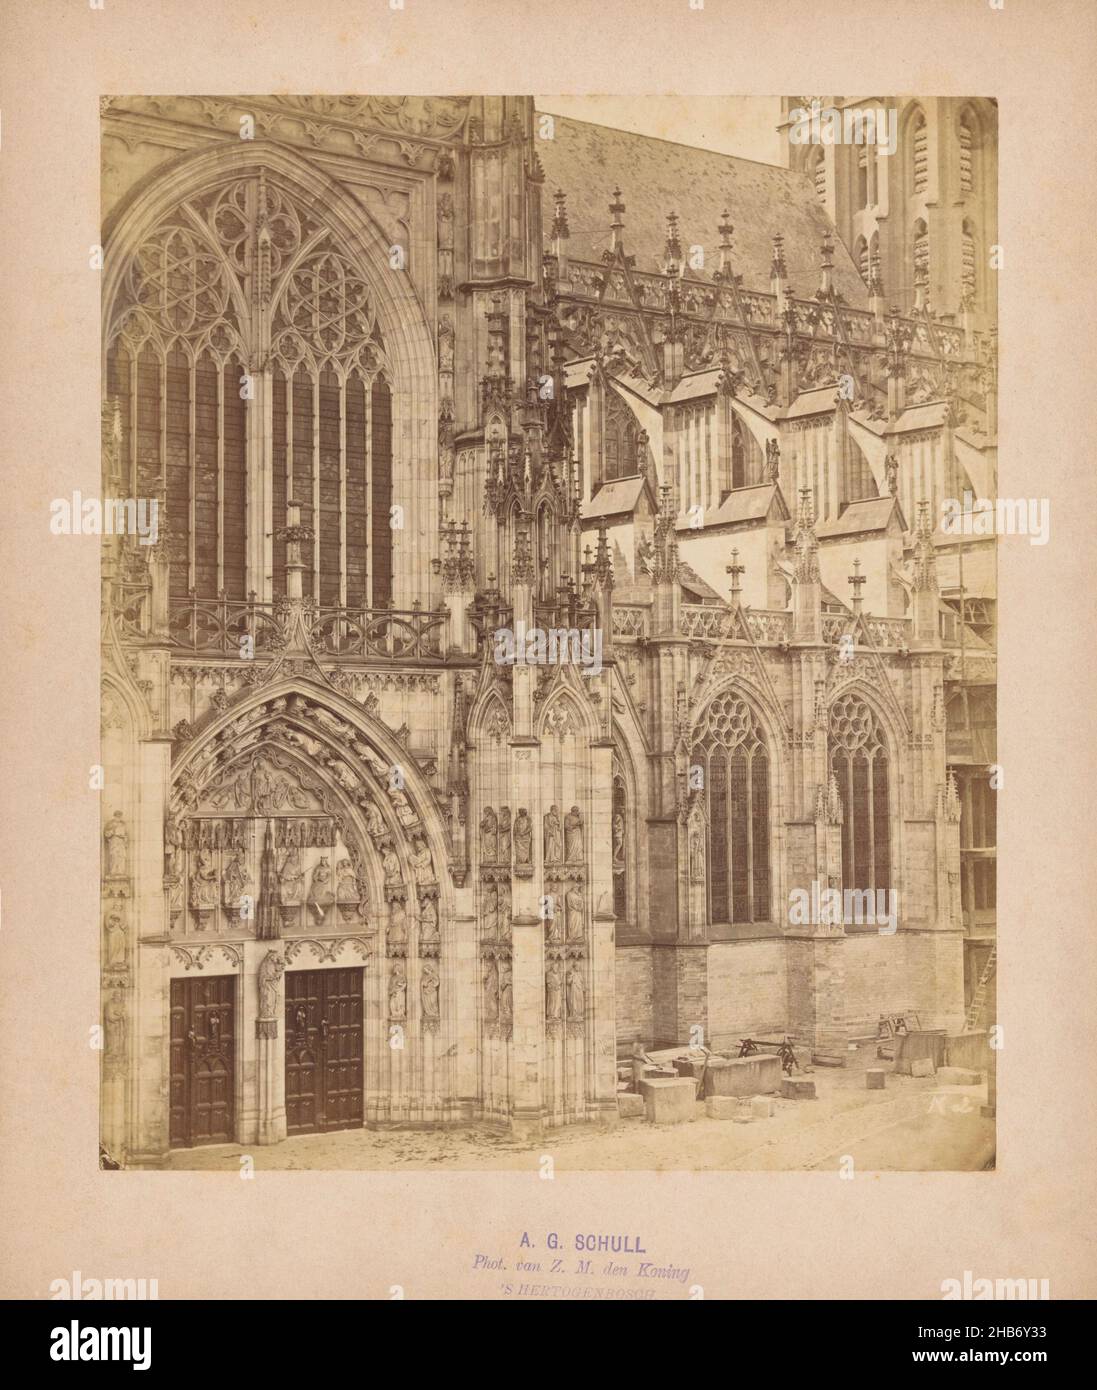 Partie de la façade de la cathédrale Saint-Jean à 's-Hertogenbosch, Antonius Godefridus Schull (mentionné sur l'objet), Den Bosch, c.1875 - c.1900, carton, imprimé albumine, hauteur 218 mm × largeur 183 mm Banque D'Images